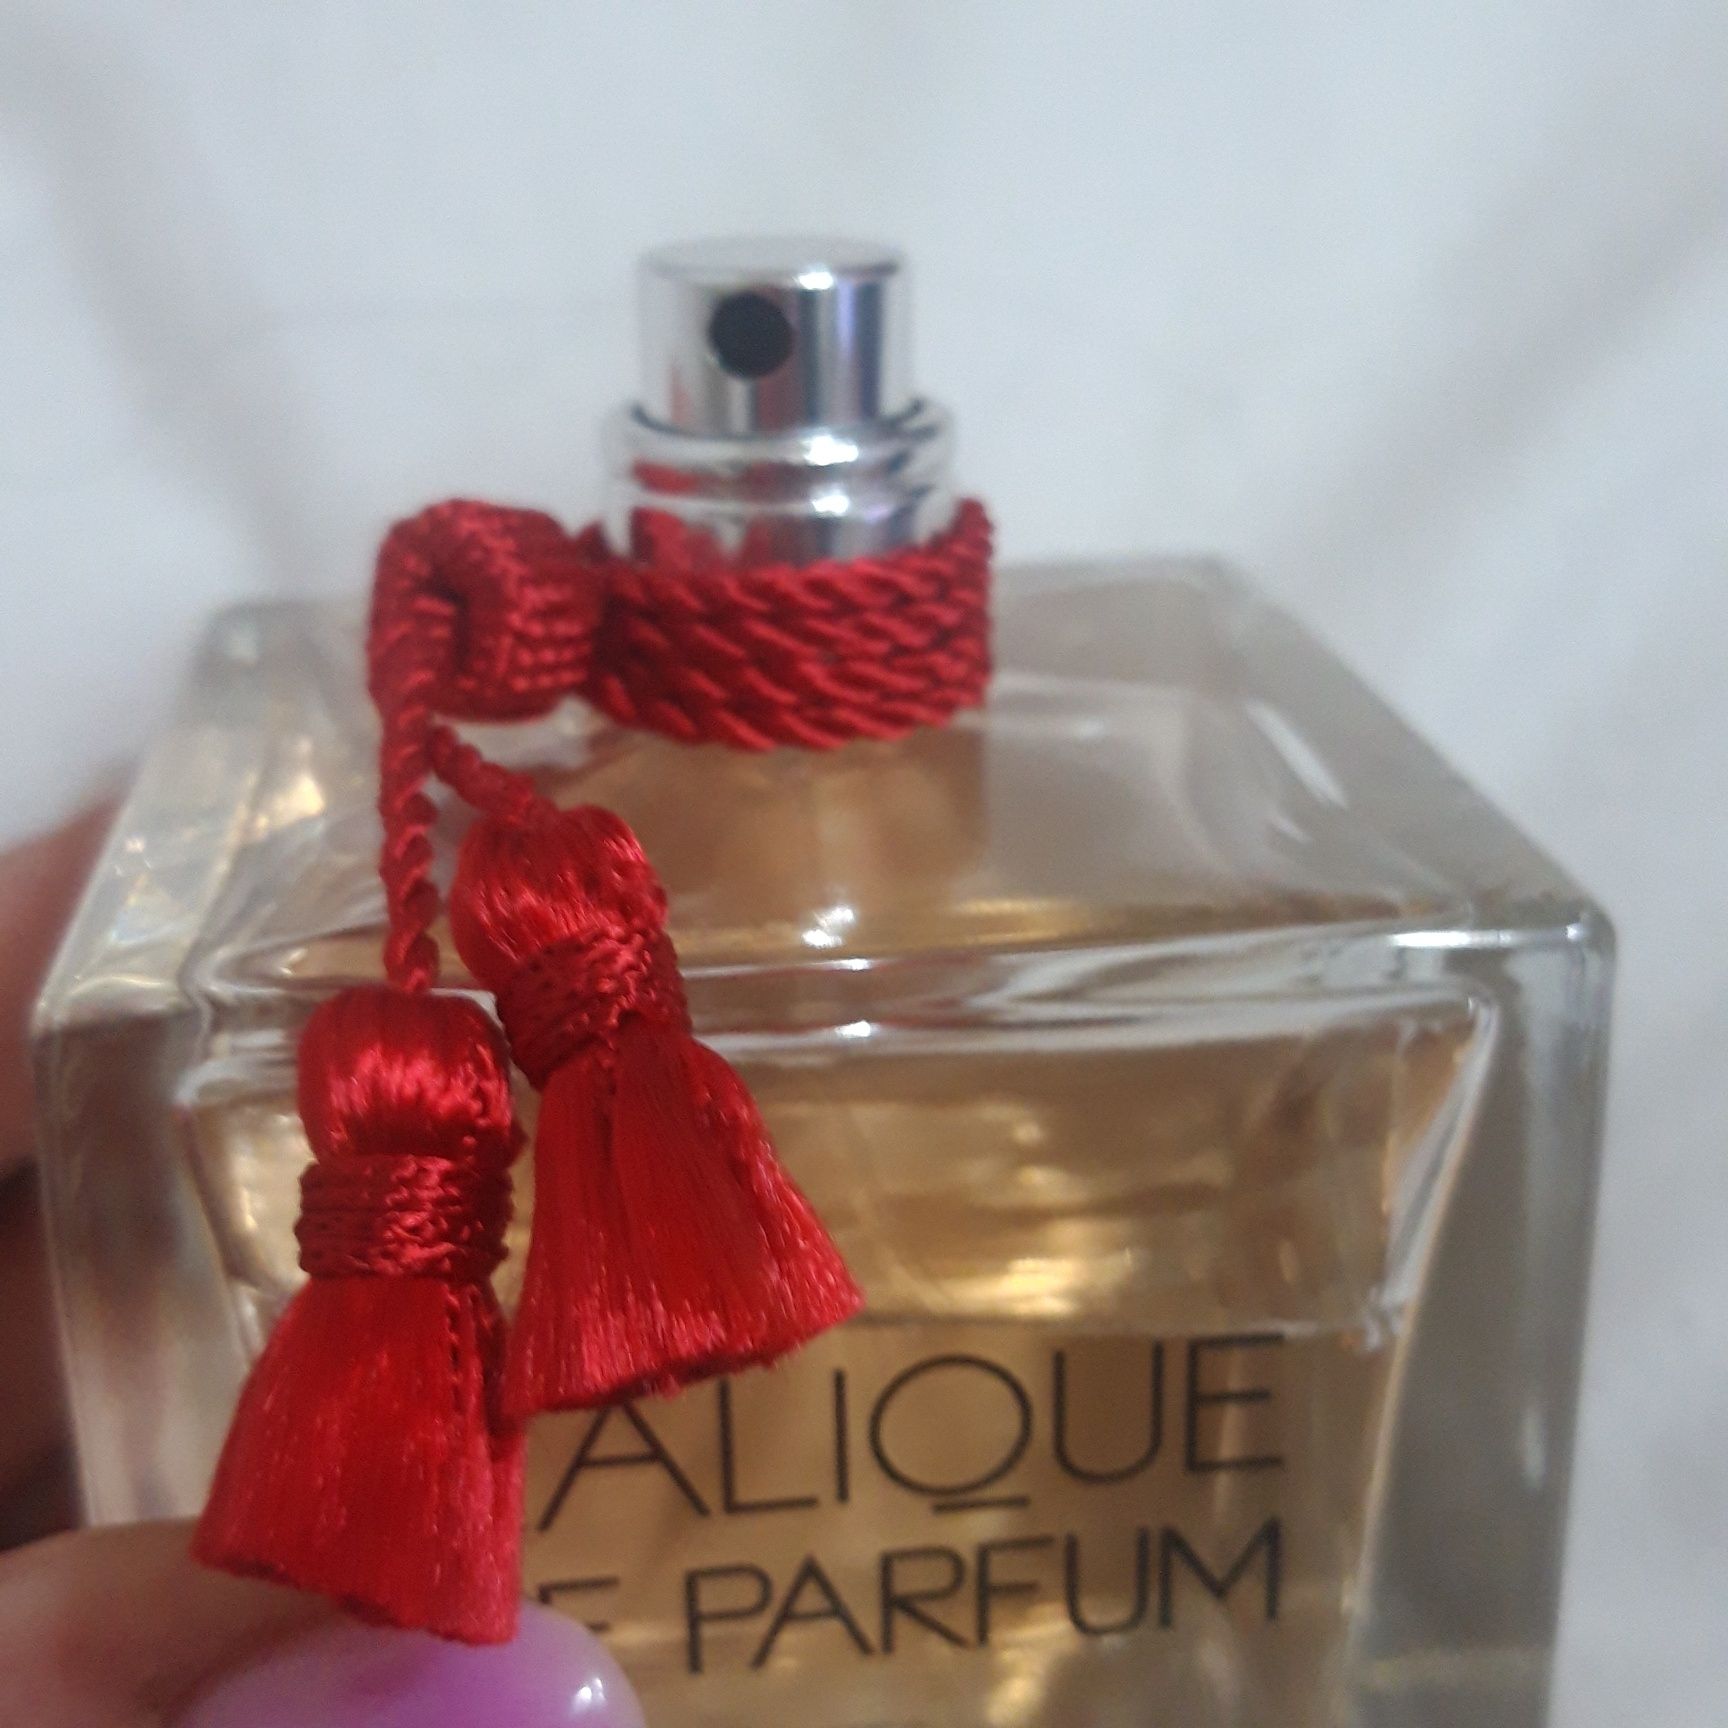 Lalique  Le  parfum -Edp